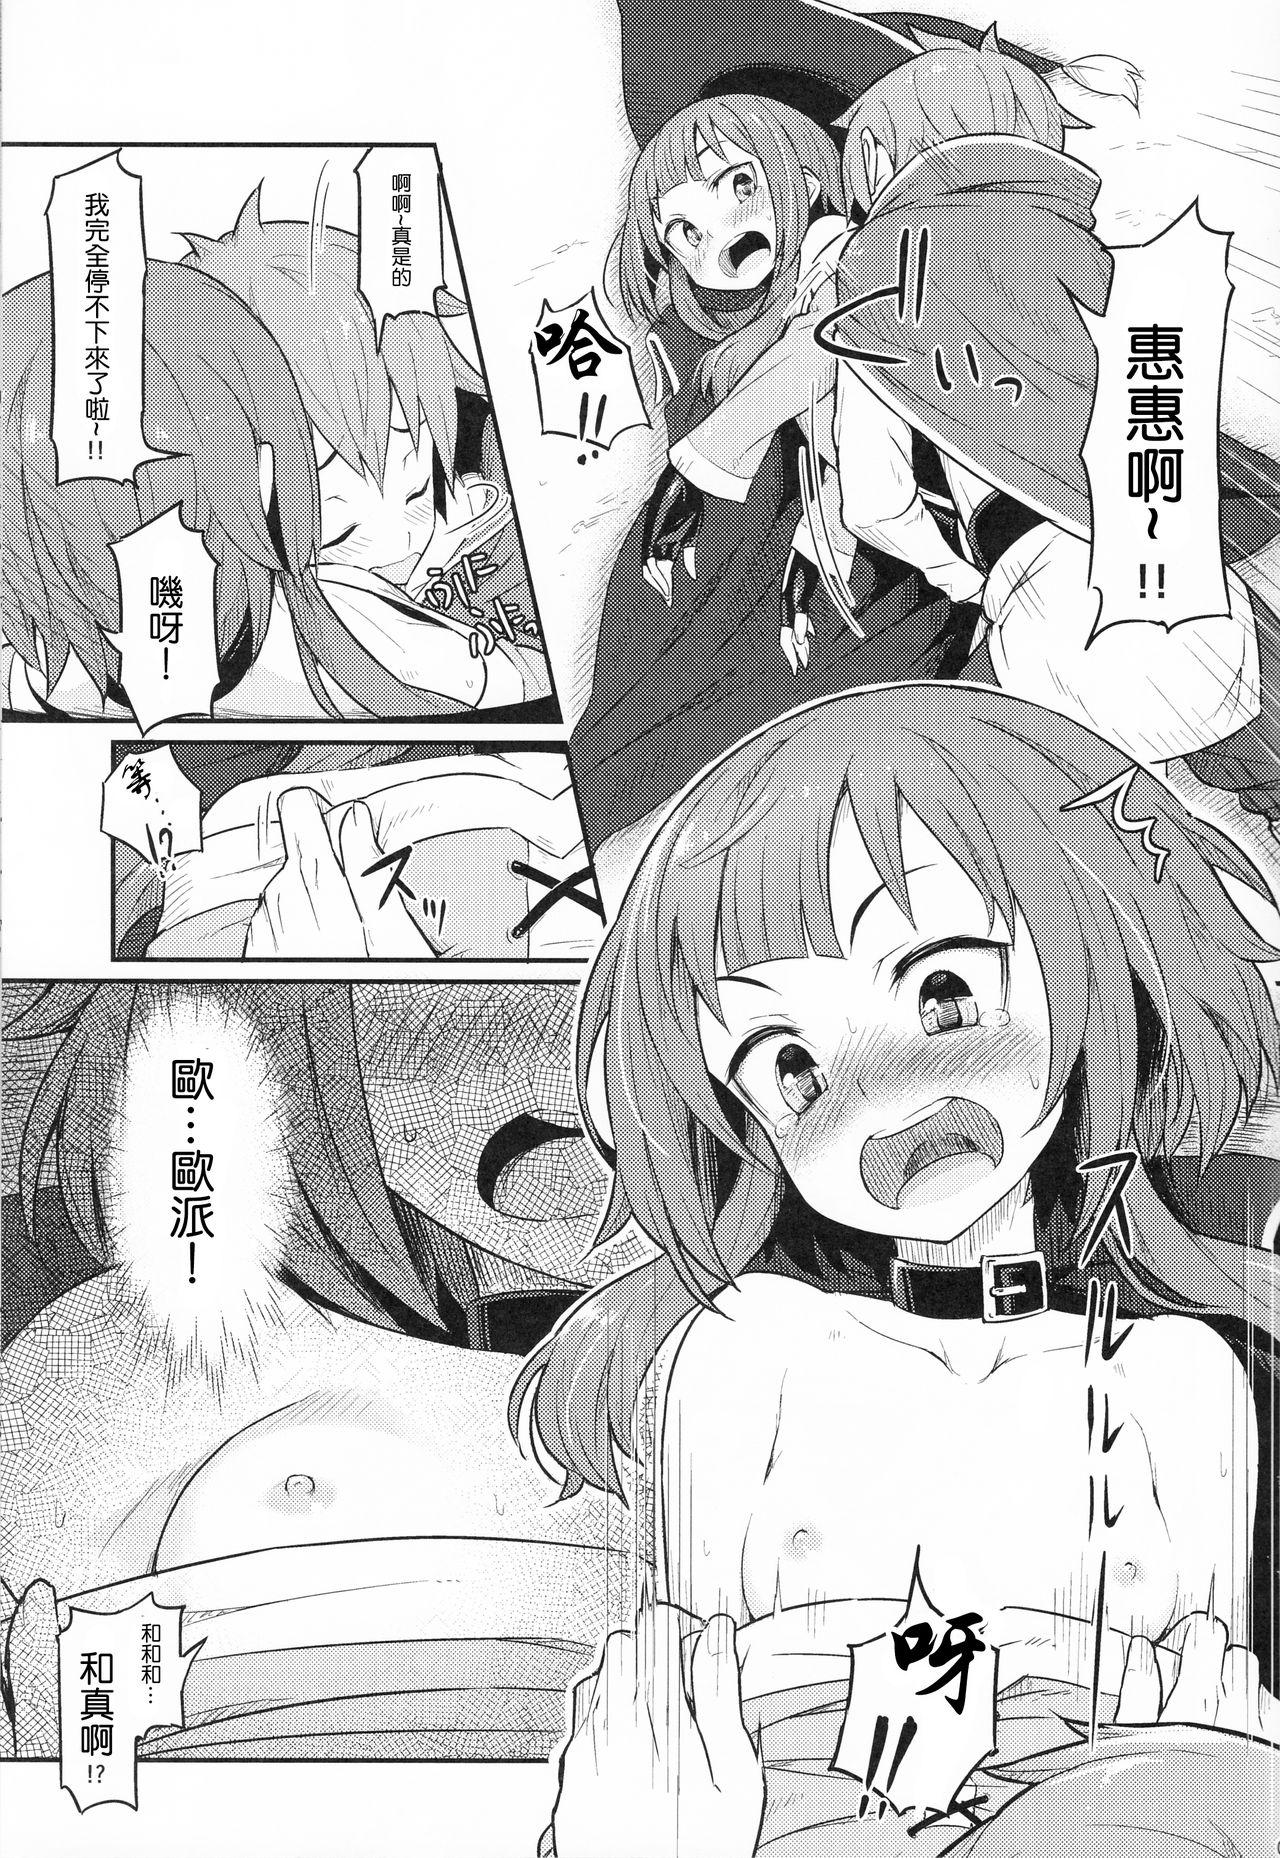 Vecina Kono Bakuretsudou ni Gohoubi o! |為爆裂魔法獻上讚美! - Kono subarashii sekai ni syukufuku o Bathroom - Page 11